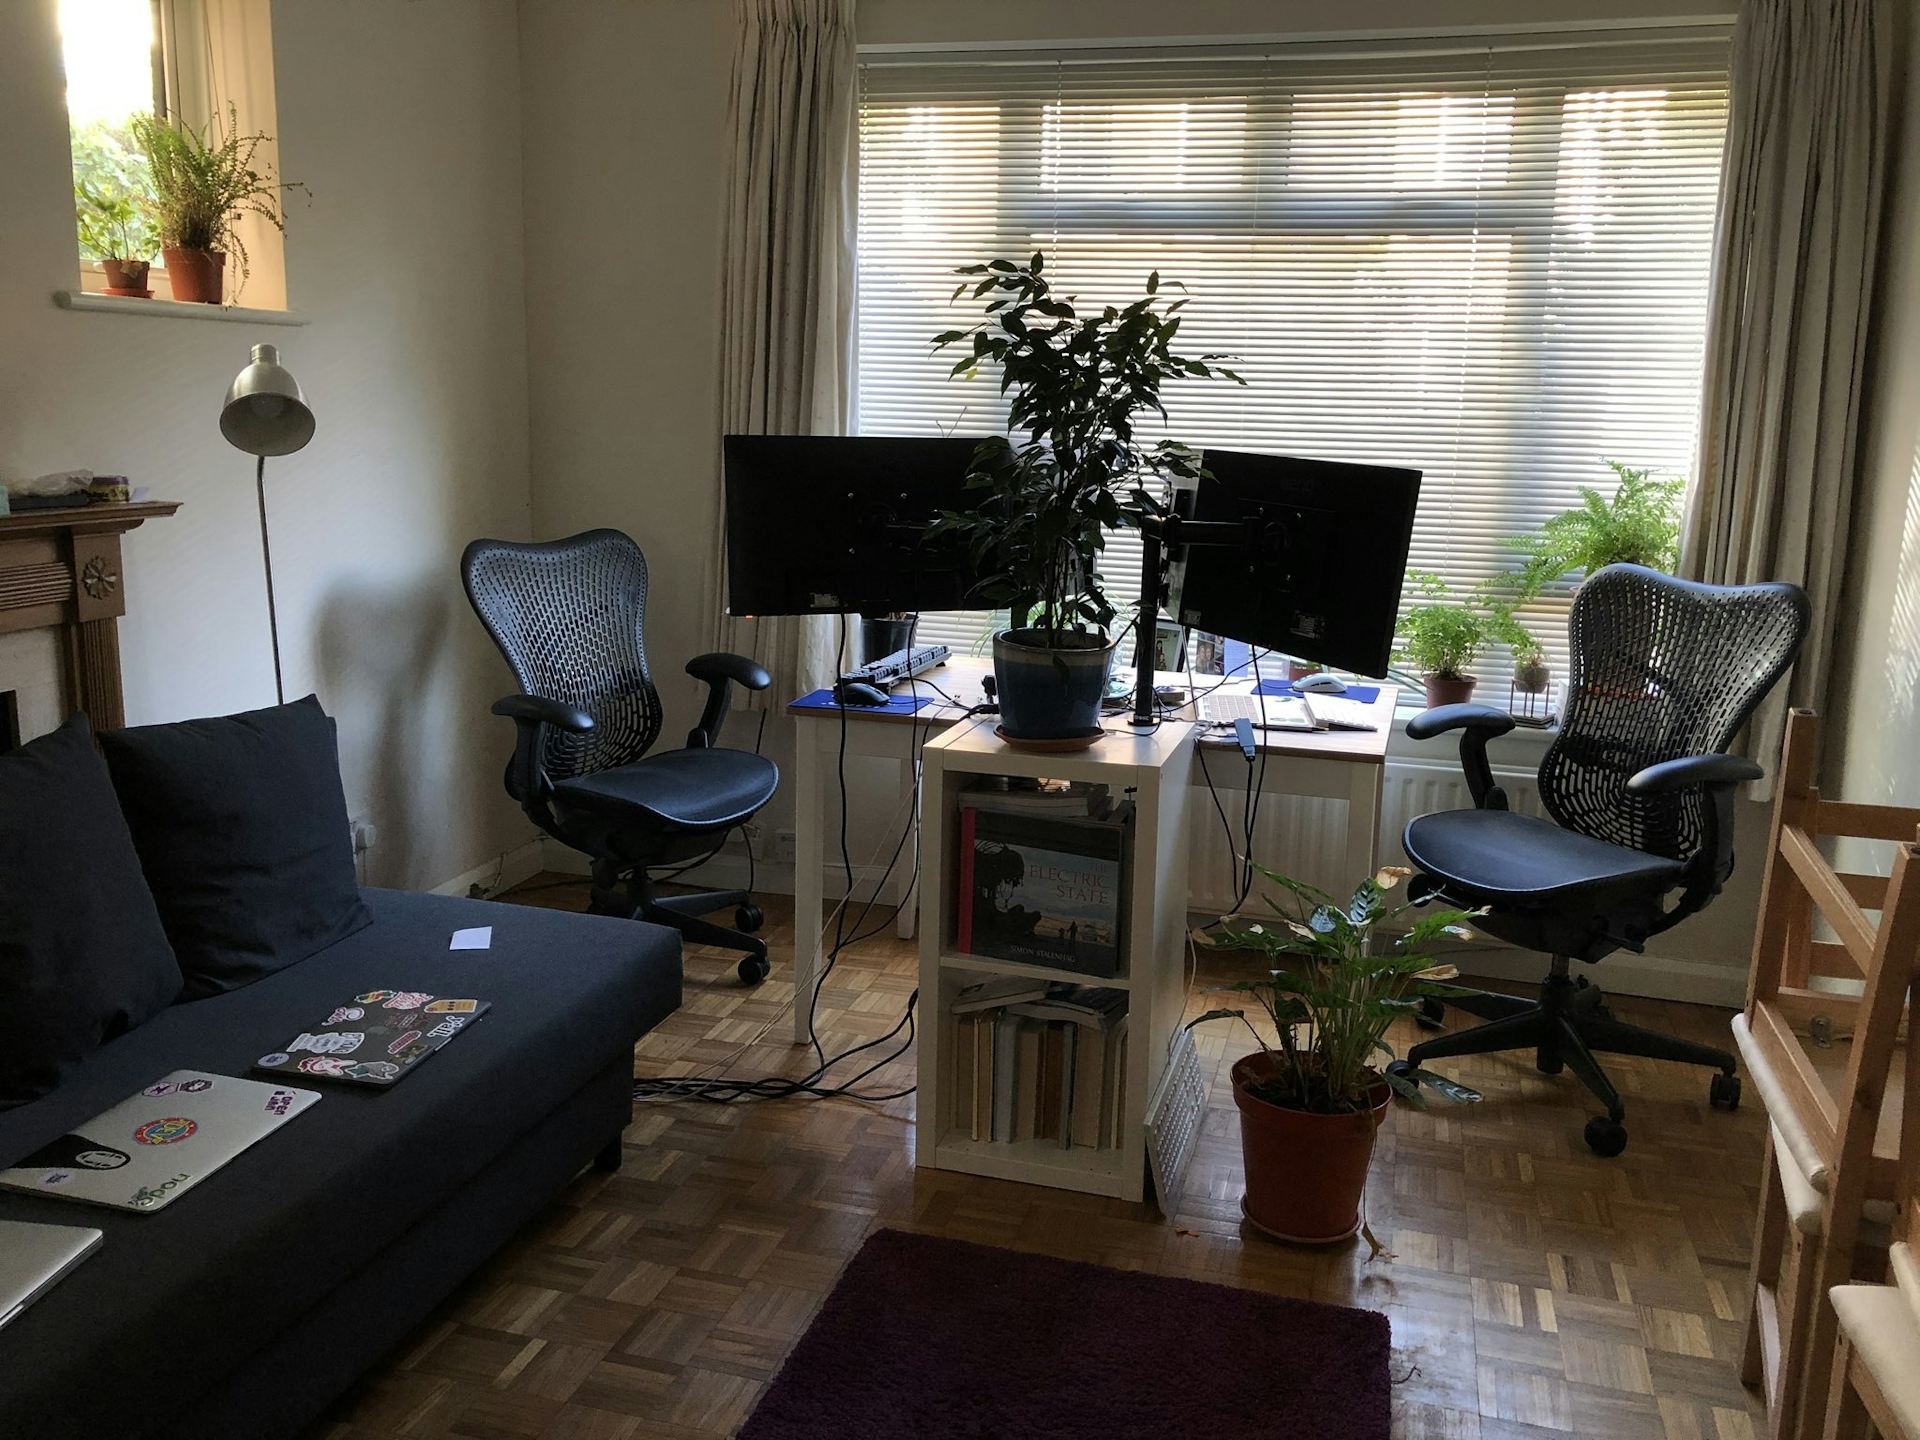 Our living room, a sofa, rug, long desk, two setups